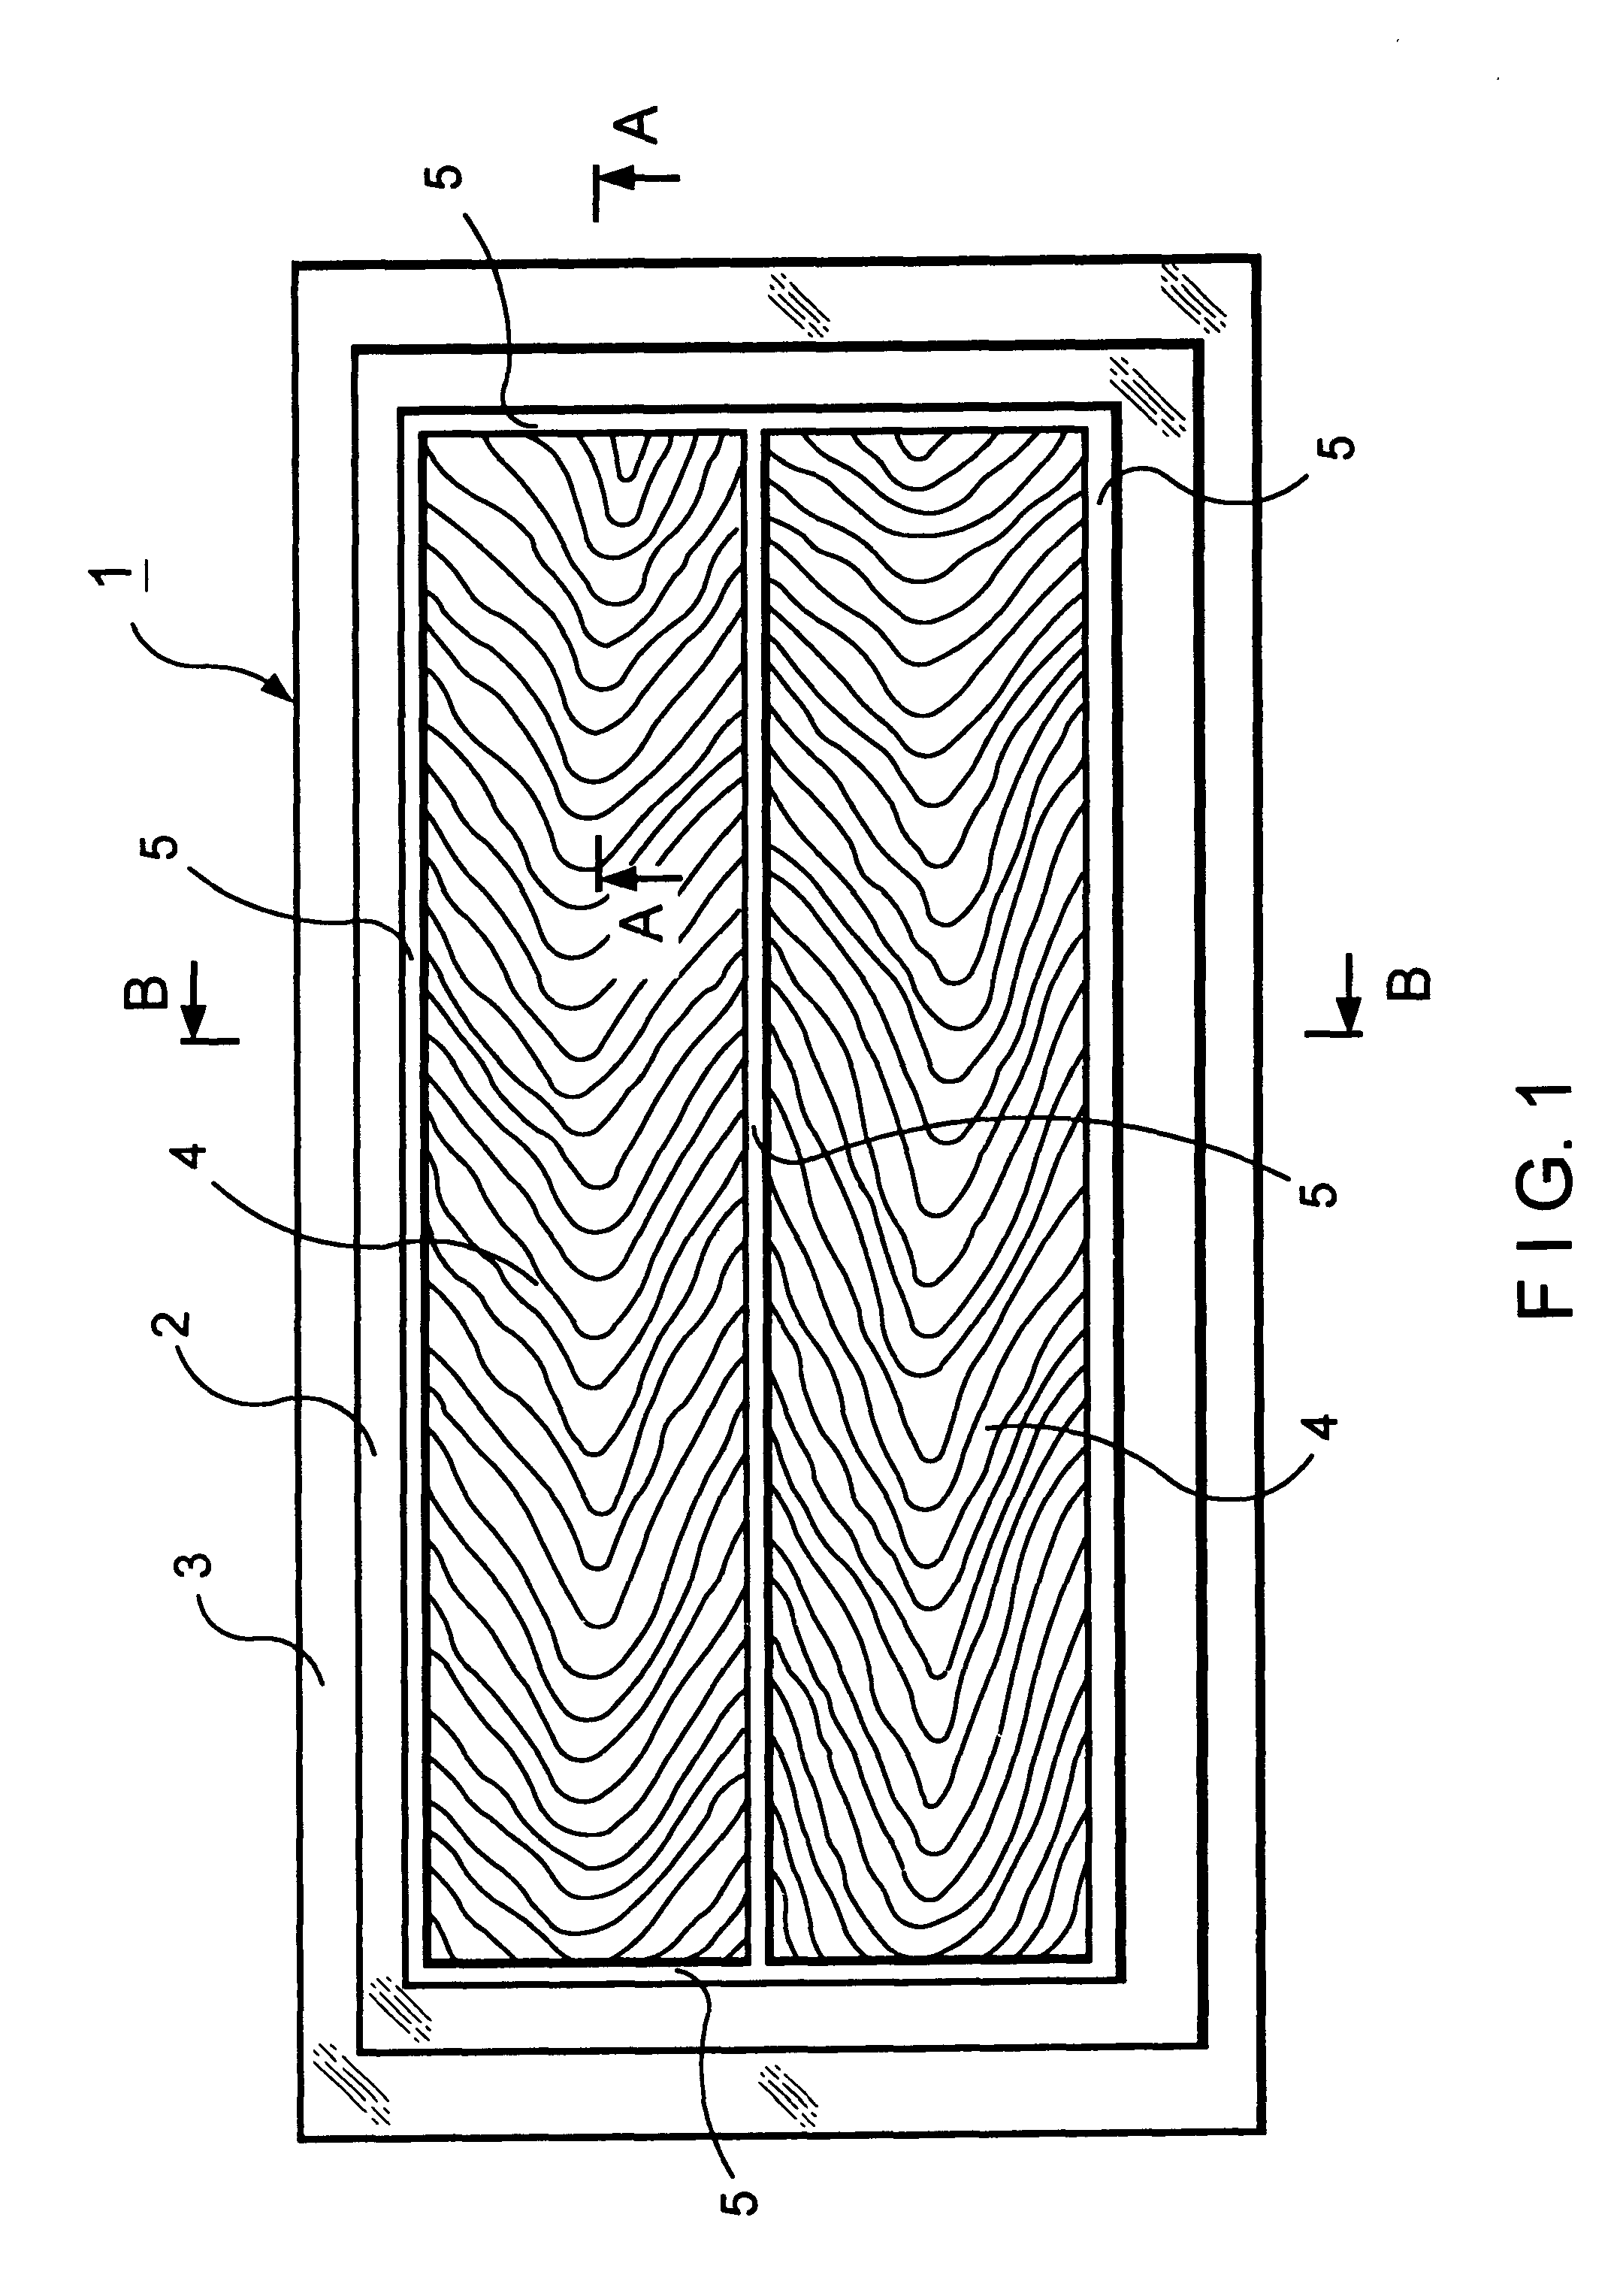 Method of manufacturing an inorganic board